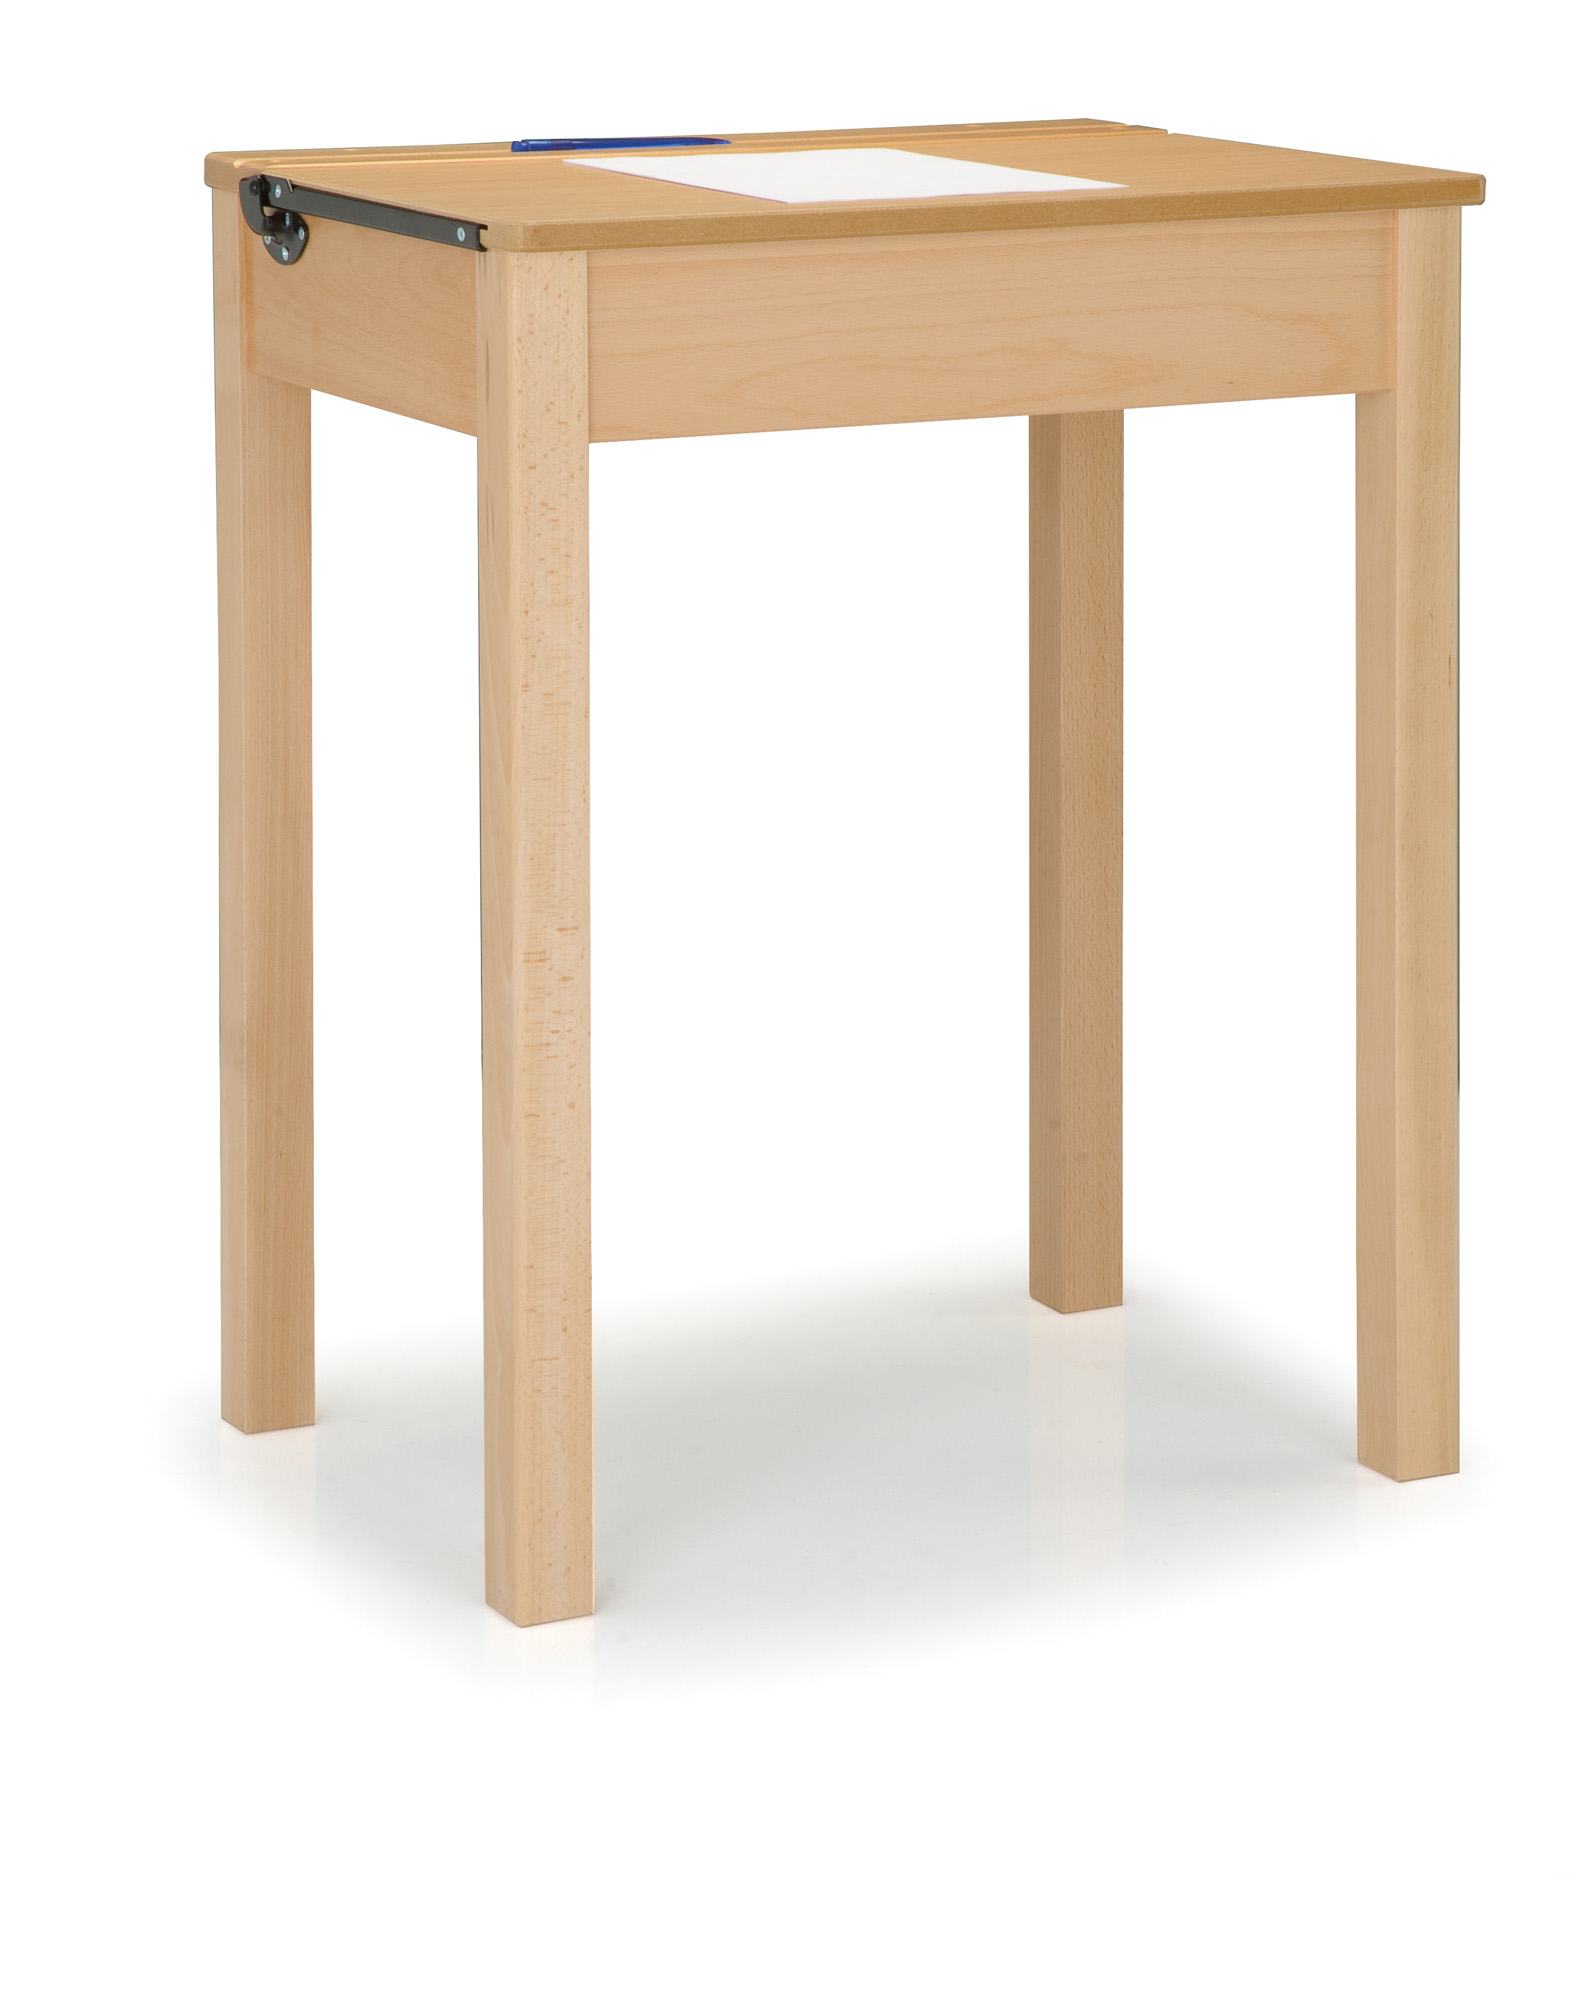 Wooden Locker Desk   Single